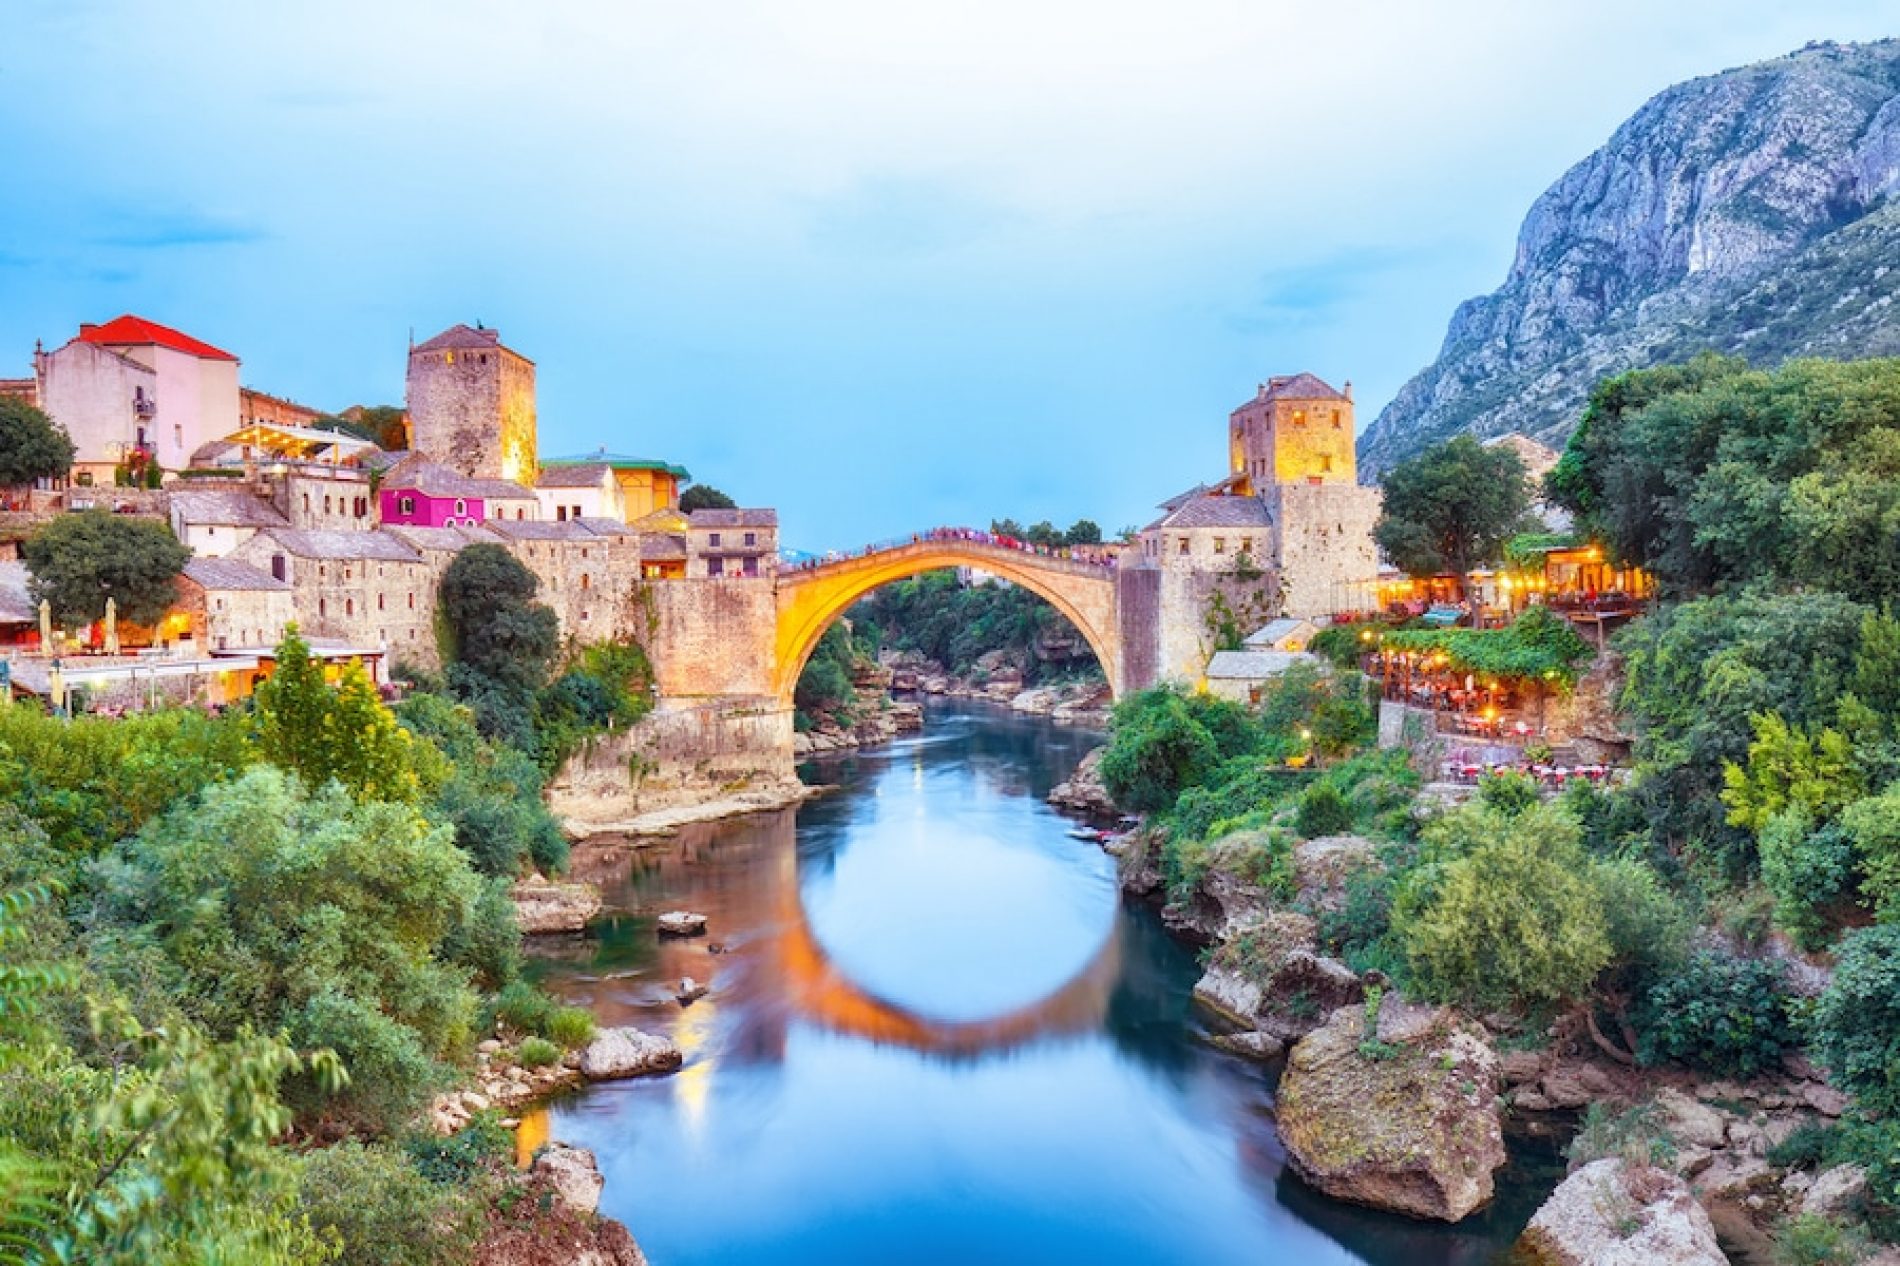 Porast turizma u Mostaru: U Starom Gradu prizori kakvi su bili prije svih restrikcija